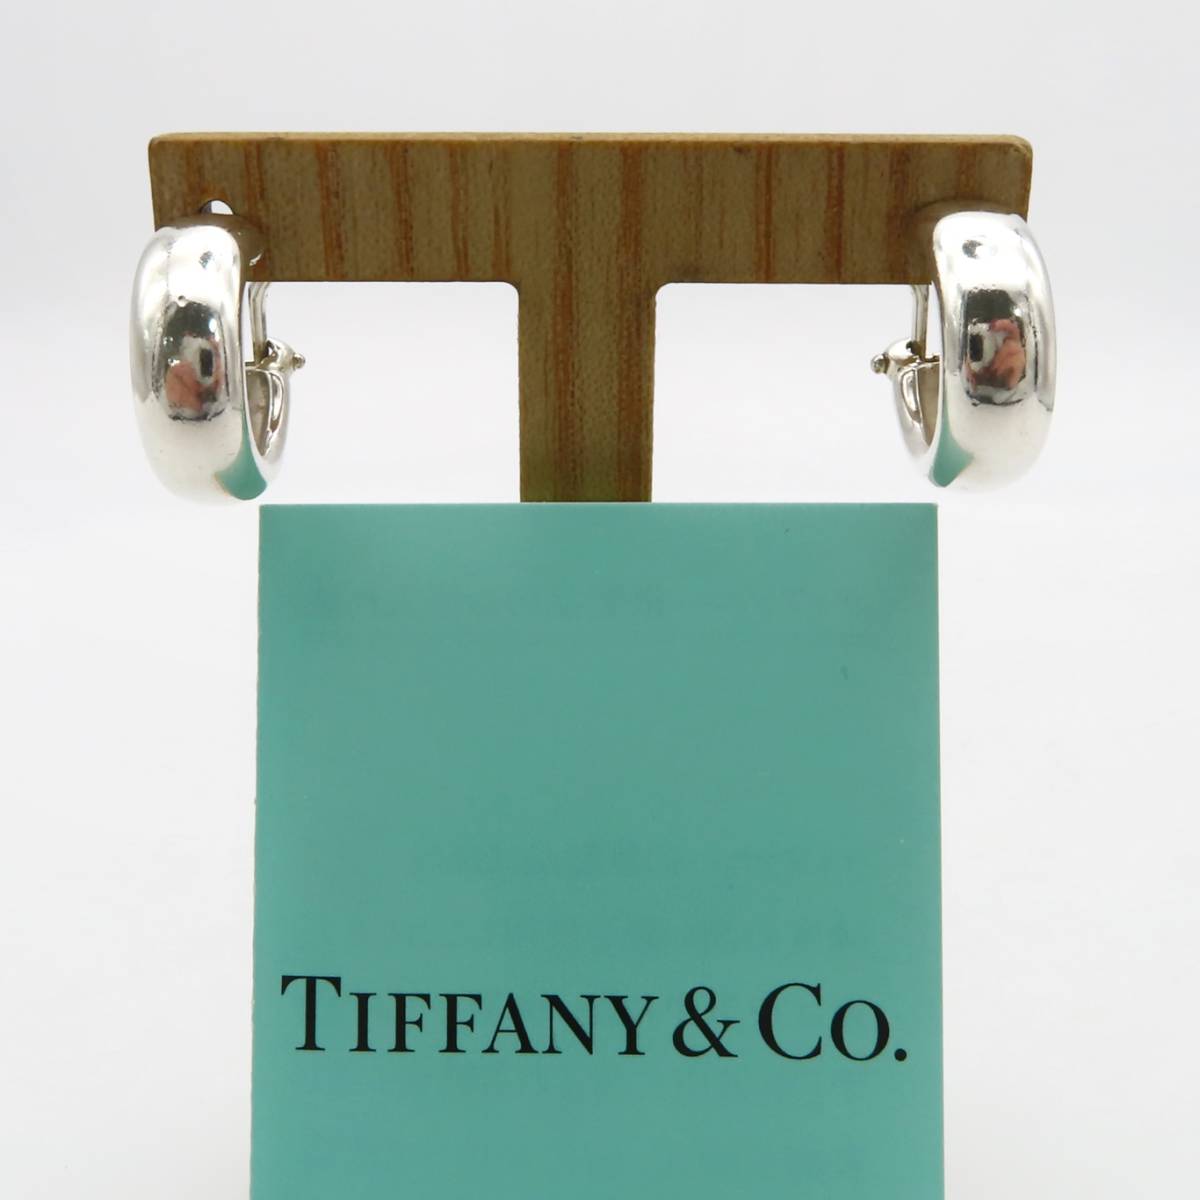 【送料無料】 美品 Tiffany&Co. ヴィンテージ ティファニー フープ シルバー イヤリング SV925 XZ15